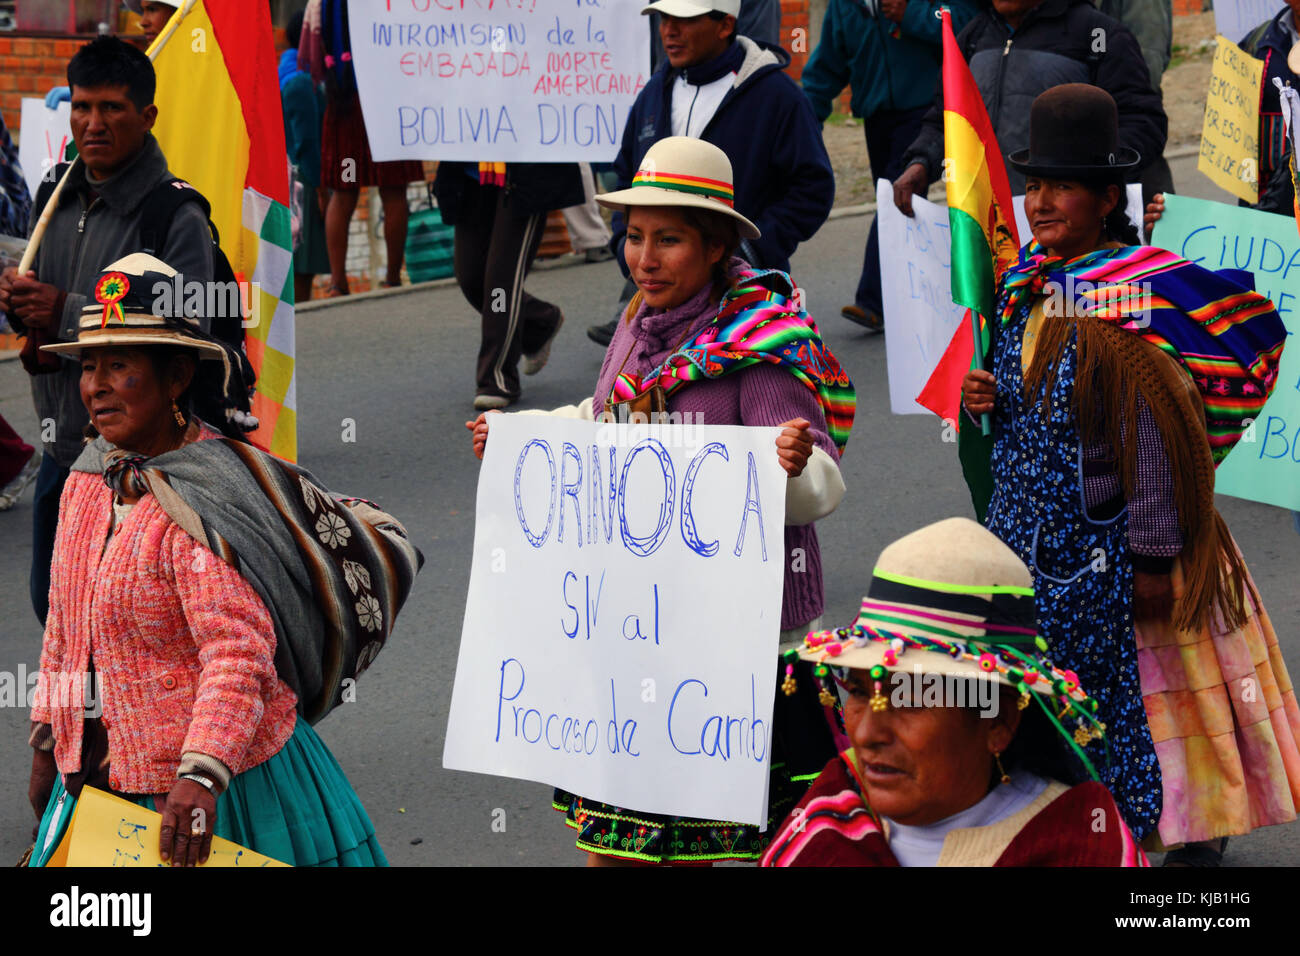 L'Aymara les femmes d'Orinoca prendre part à un gouvernement pro mars pour montrer leur soutien à l'intention de construire une route à travers la région TIPNIS, La Paz, Bolivie Banque D'Images